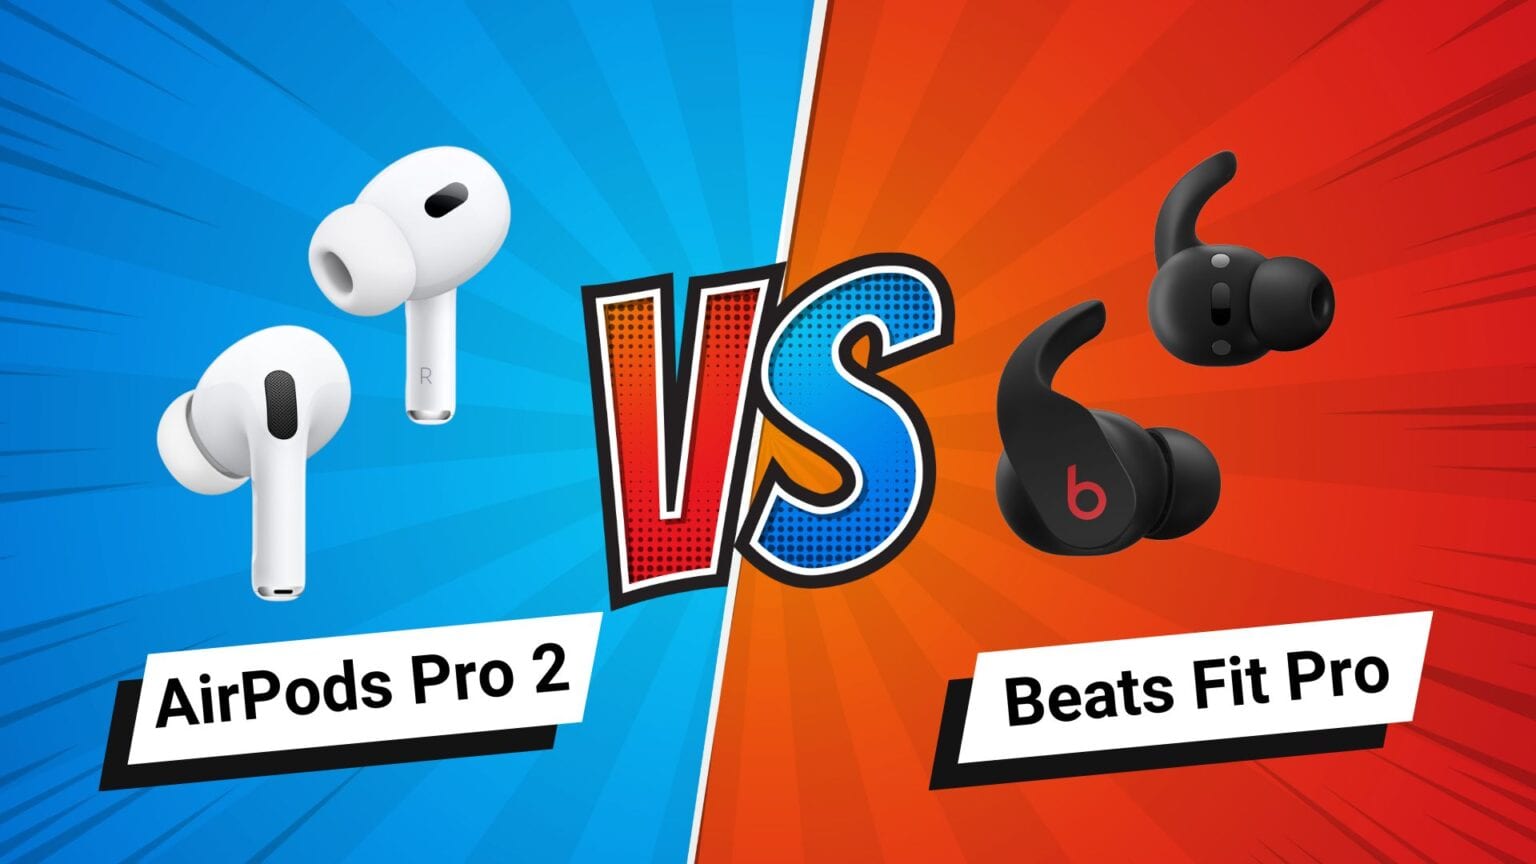 AirPods Pro 2 vs. Beats Fit Pro comparison